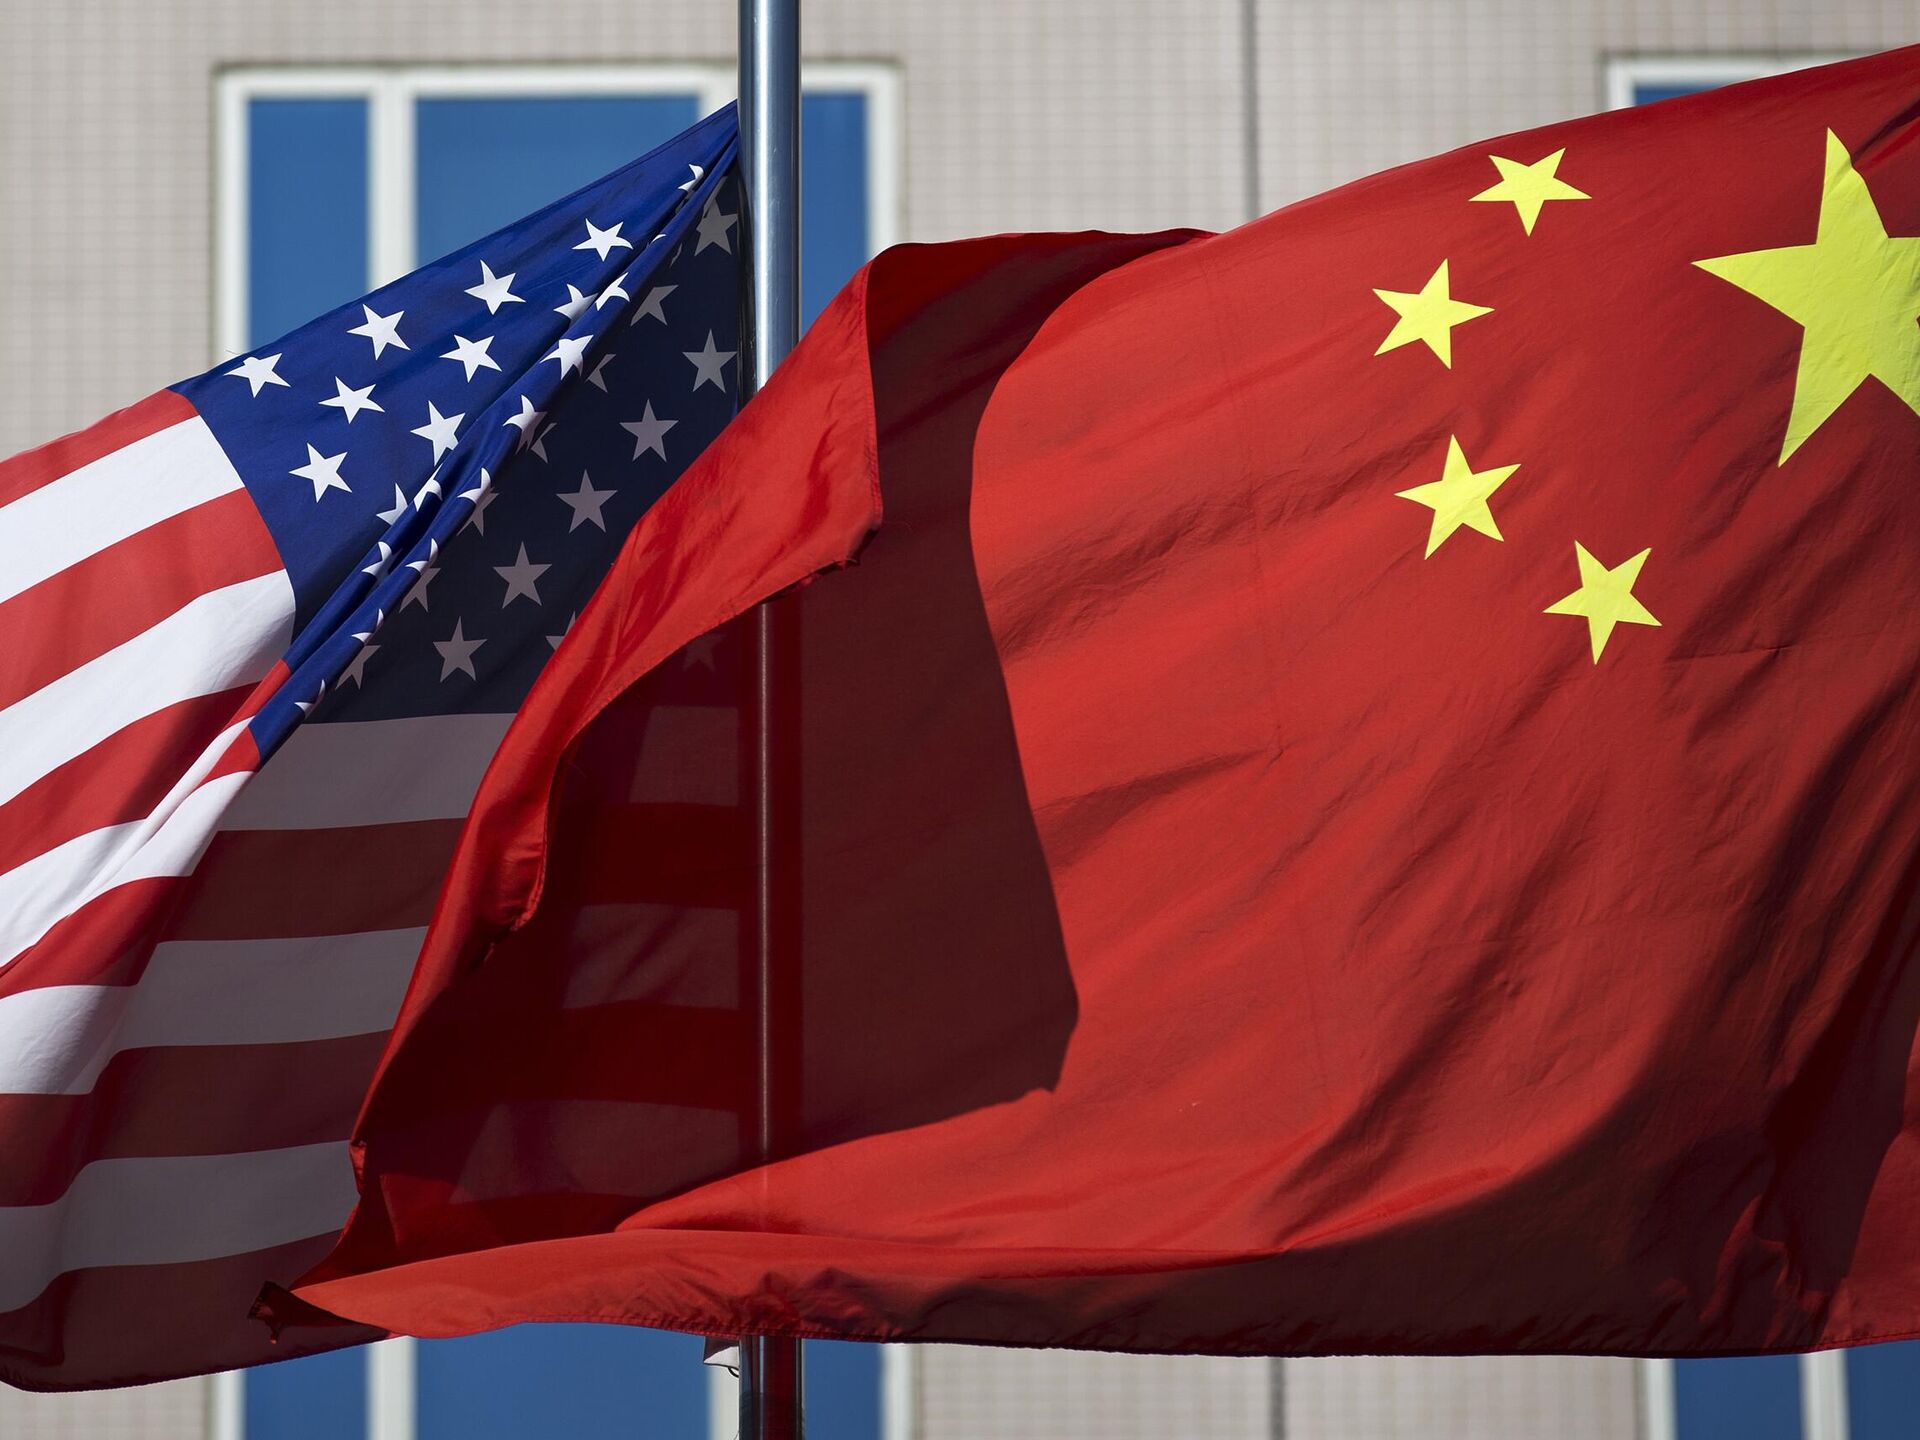 GUERRA DE CHIPS: China vs EEUU! 